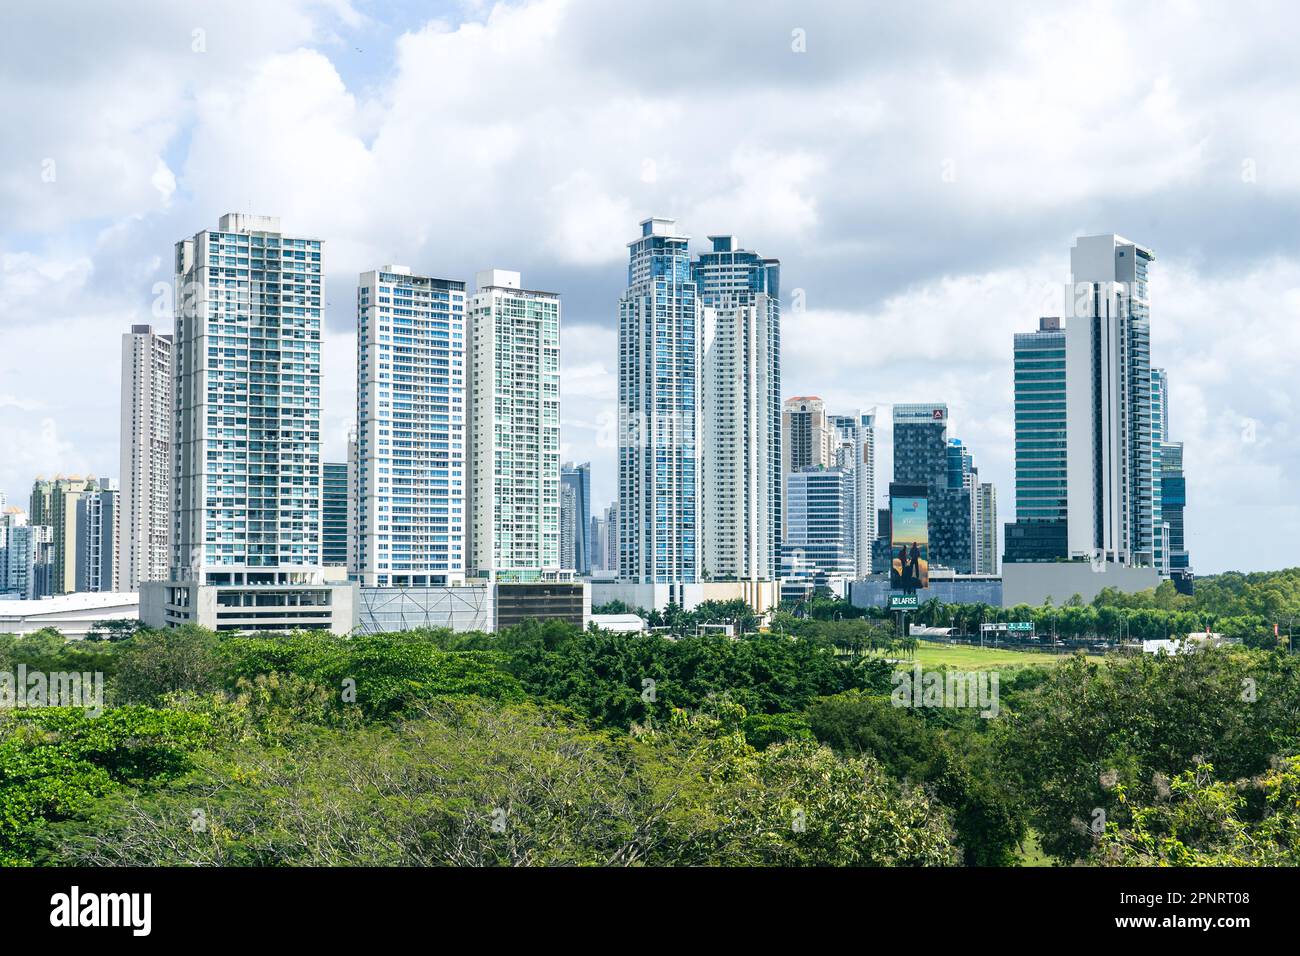 Die Skyline von Panama City mit Überresten der alten Hauptstadt von Panama, die vor dem Hotel sitzen, Wolkenkratzer mit blauem und bewölktem Himmel Stockfoto